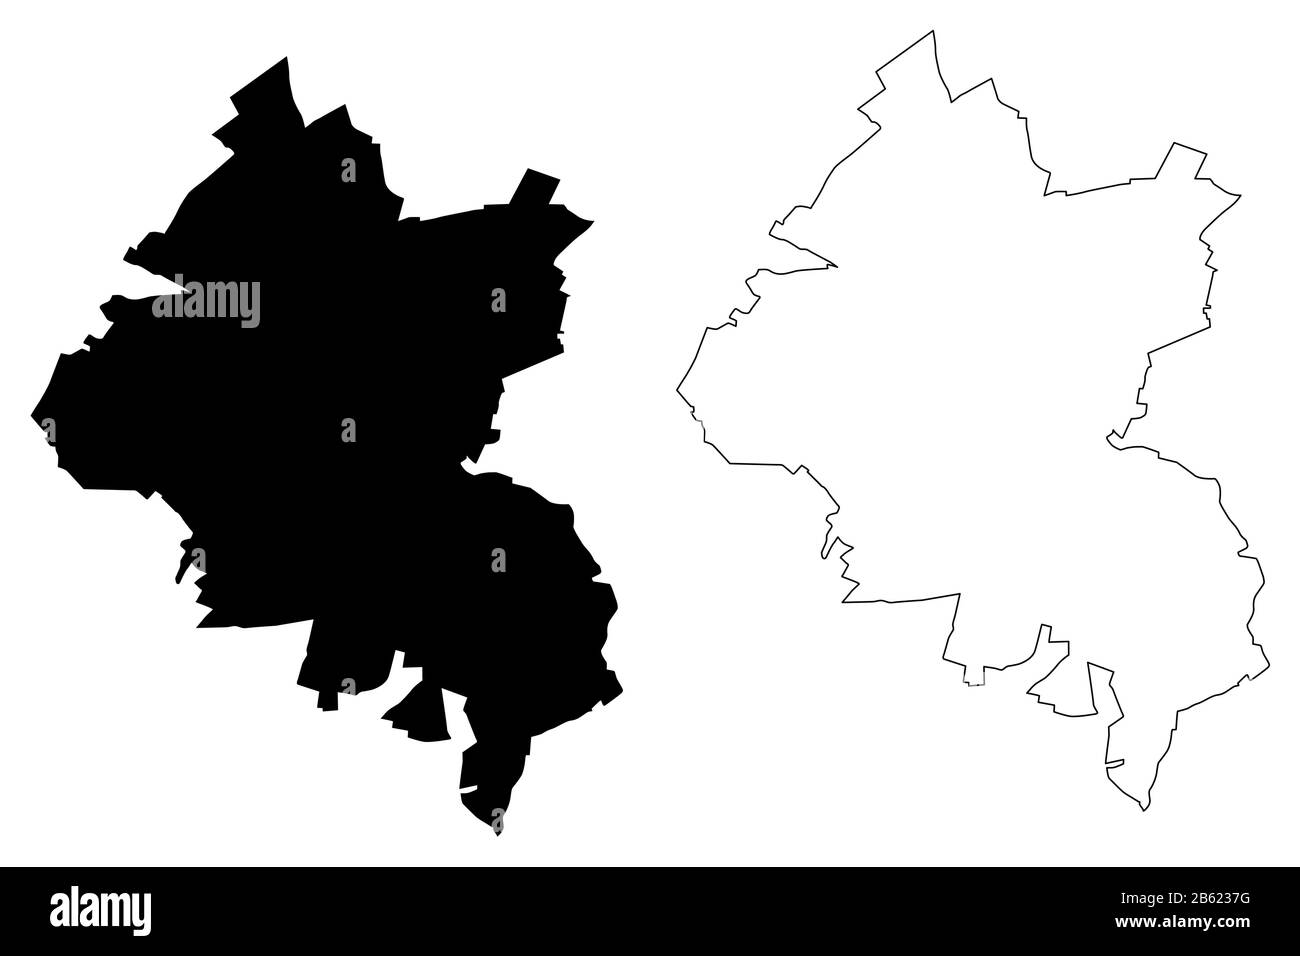 Amiens City (République française, France) illustration vectorielle de carte, esquisse de griffonnage carte de la ville d'Amiens Illustration de Vecteur